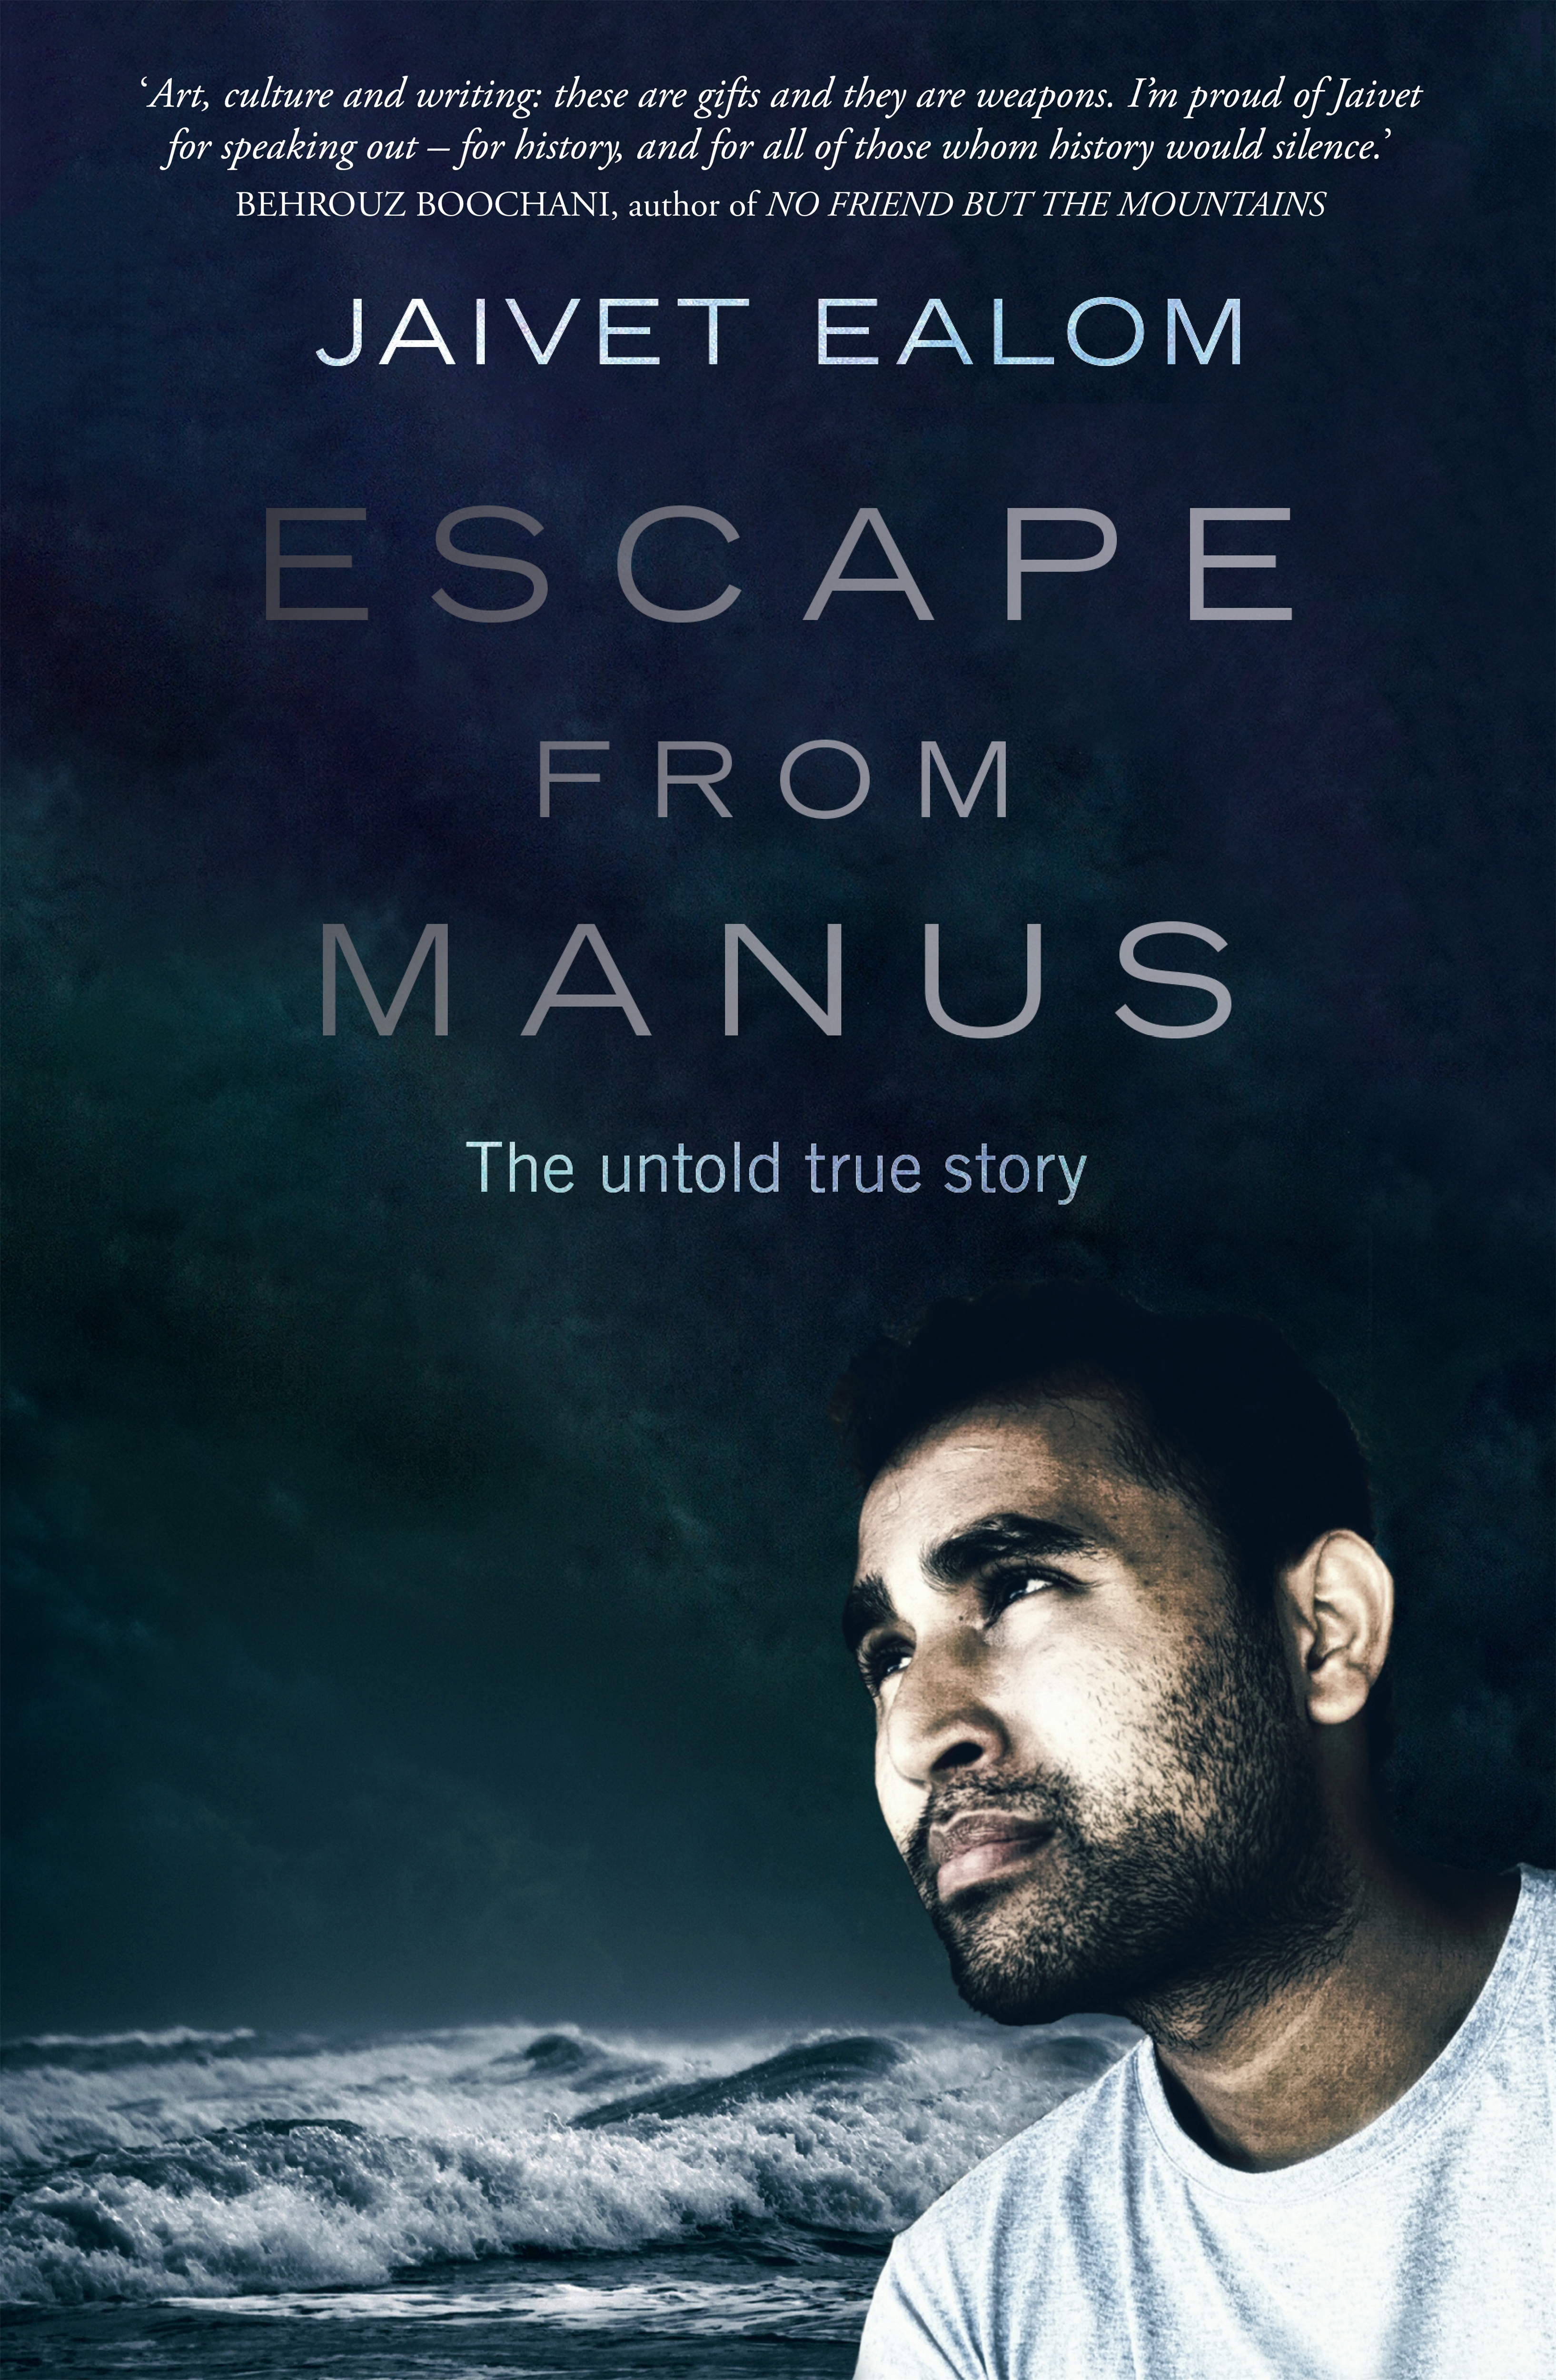 Escape from Manus by Jaivet Ealom - Penguin Books New Zealand